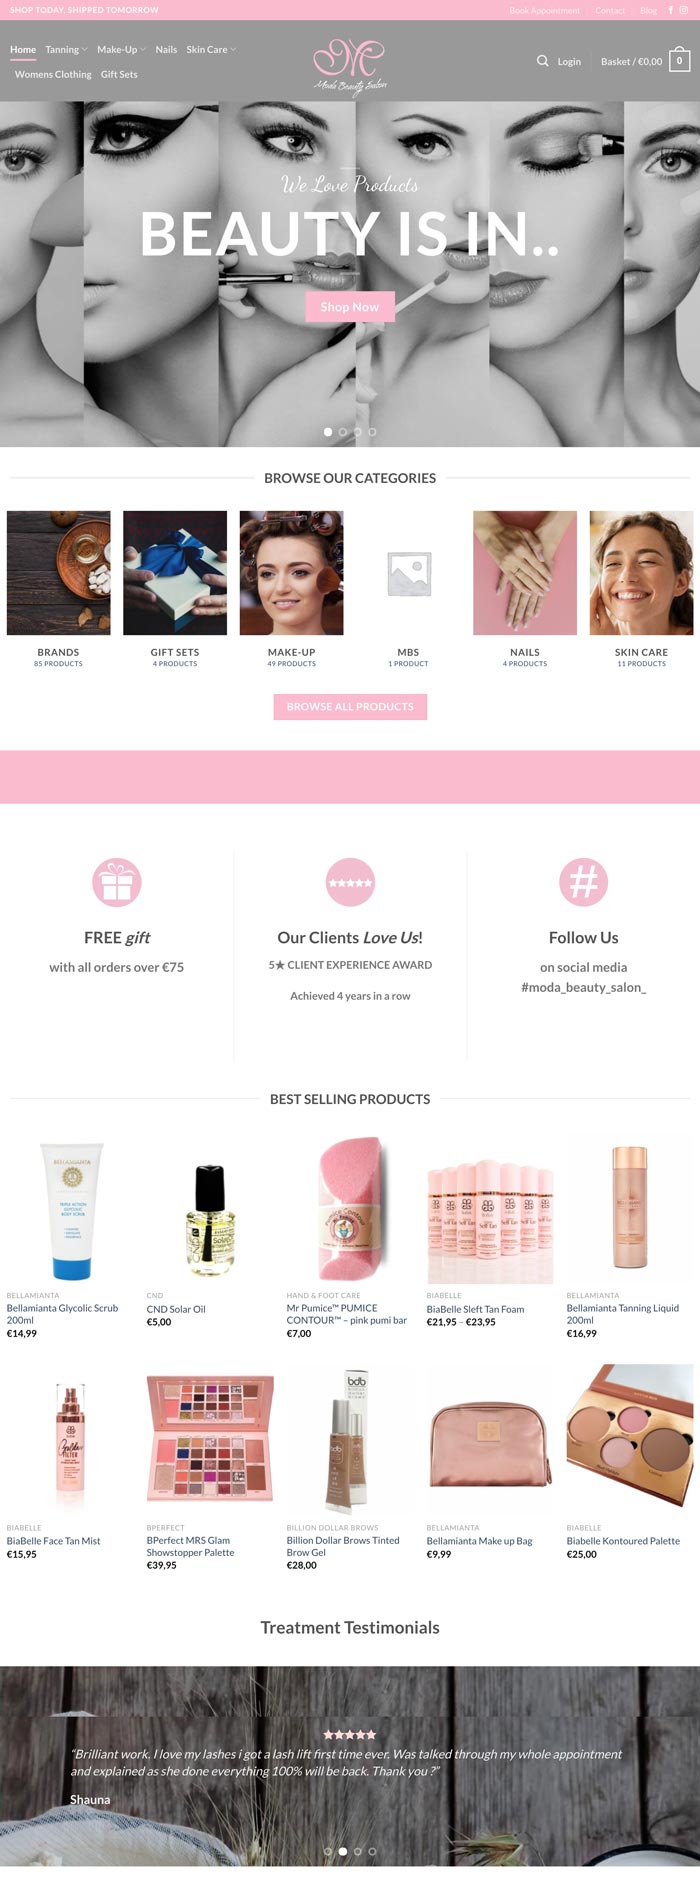 modabeauty website